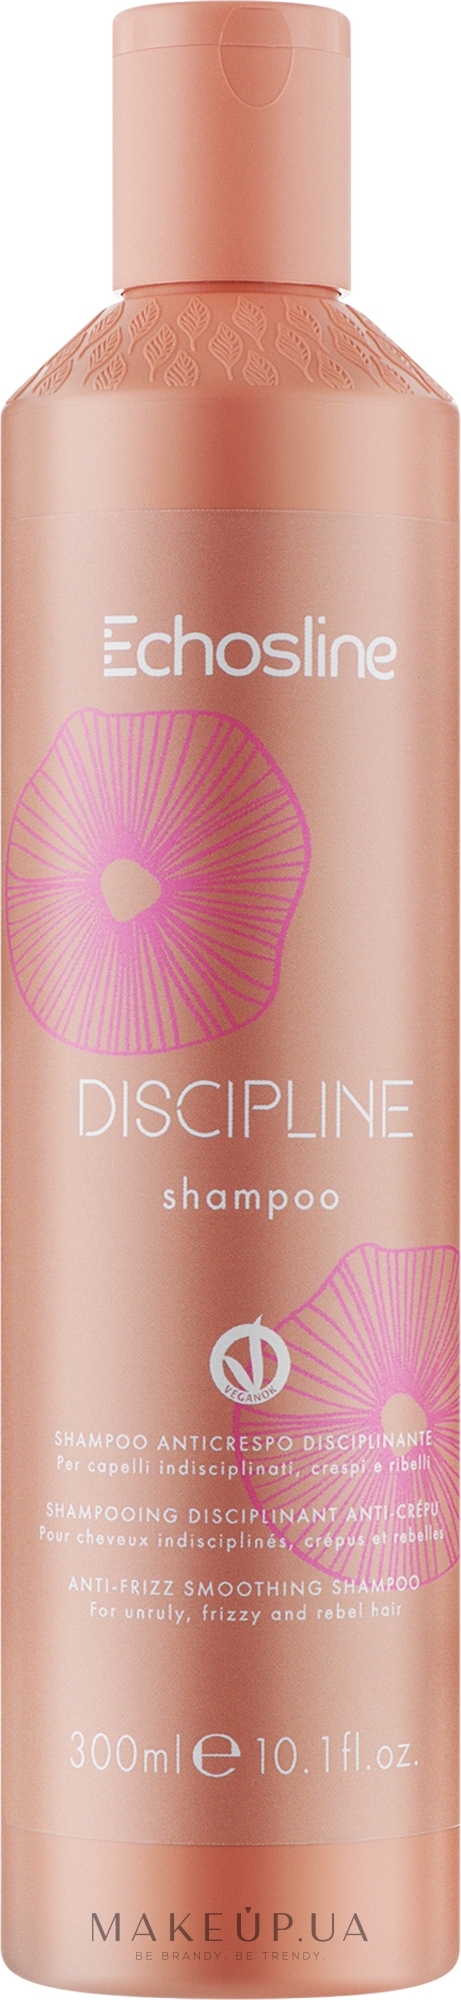 Шампунь для пористых волос - Echosline Discipline Shampoo — фото 300ml